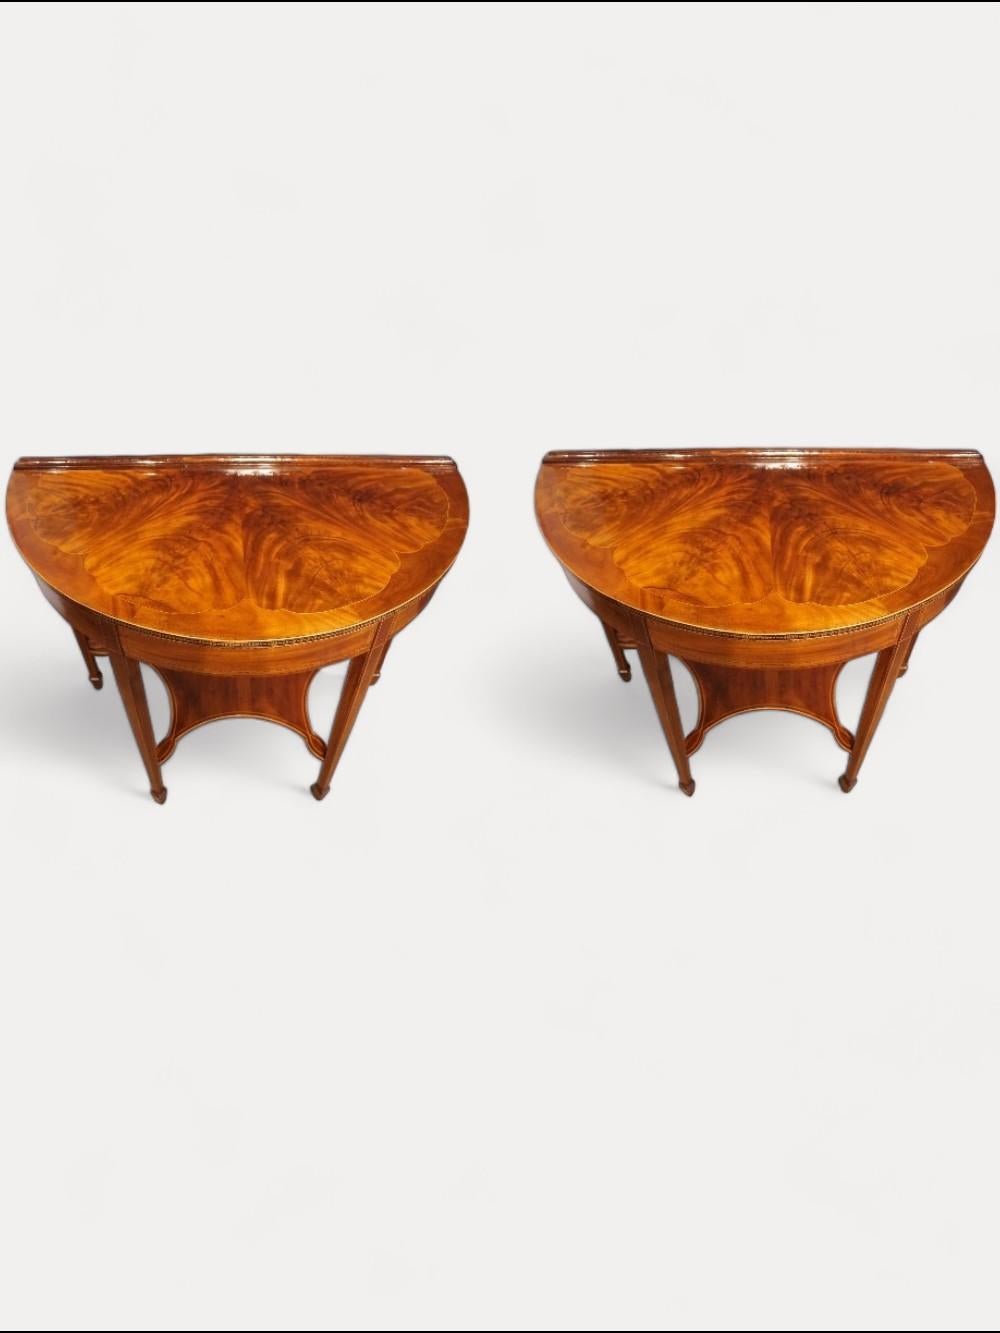 Paar edwardianische Demi-Lune-Tische
Dieses Paar edwardianischer Demi-Lune-Tische stammt aus der Zeit um 1910.
Jeder Tisch hat quadratische, spitz zulaufende Beine, die mit Spatenfüßen enden.
Die halbrunden Platten mit den geformten Intarsienmustern